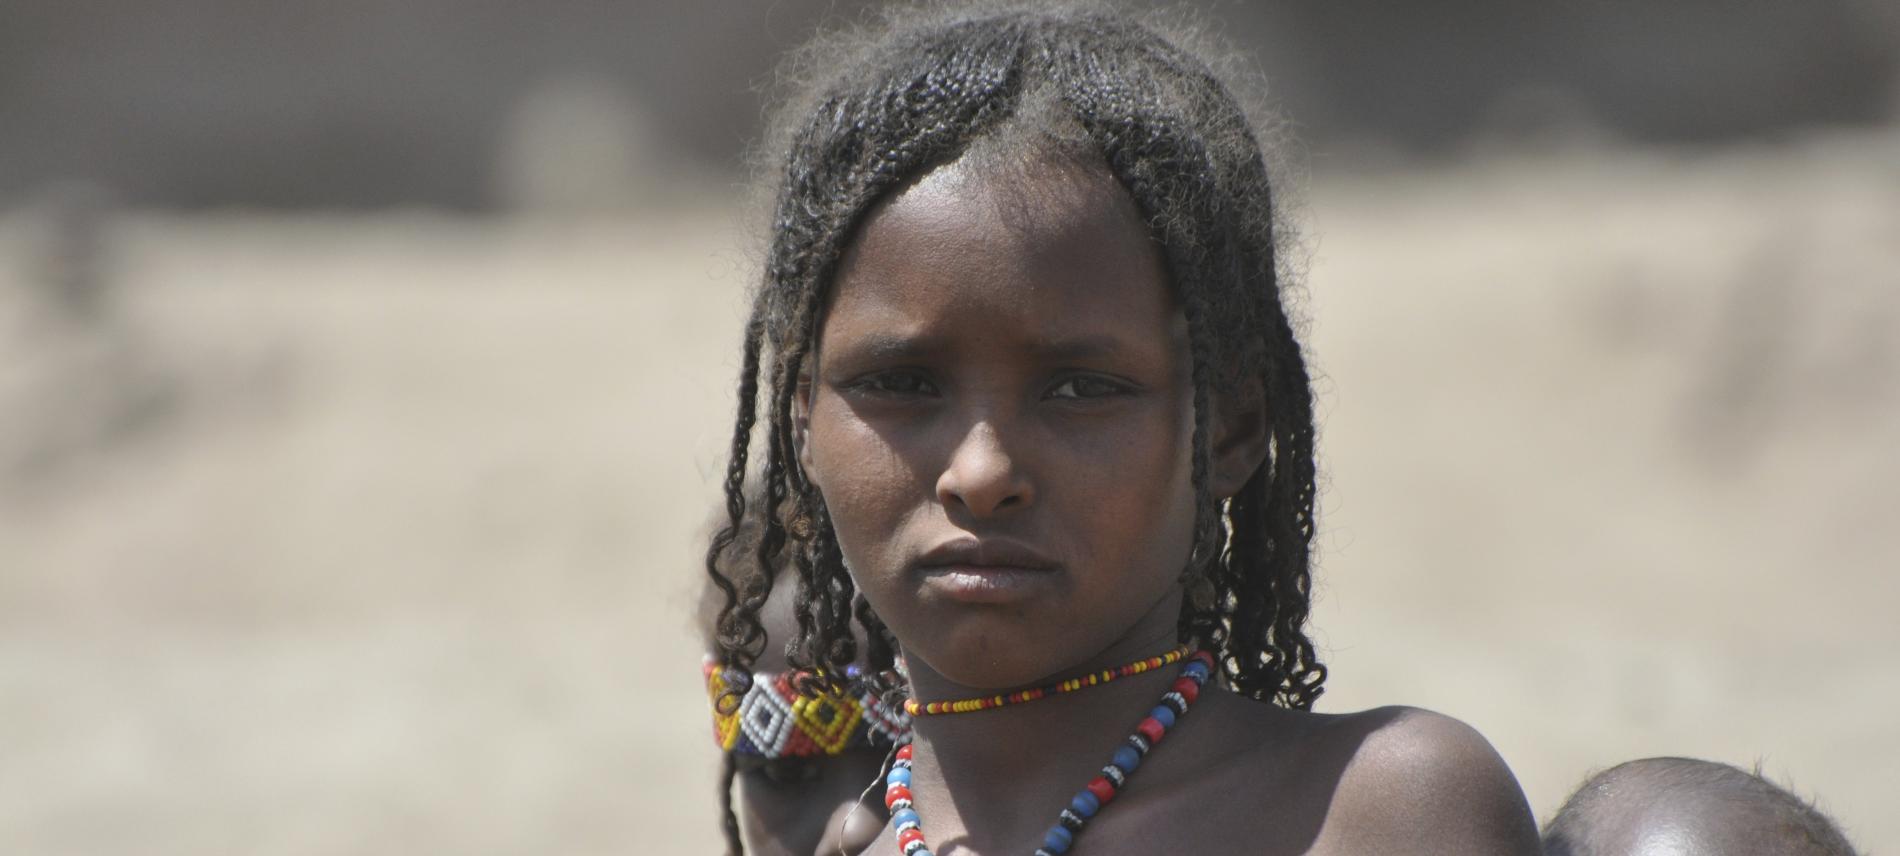 Ein Afar Mädchen in Äthiopien. Foto: Hagmann